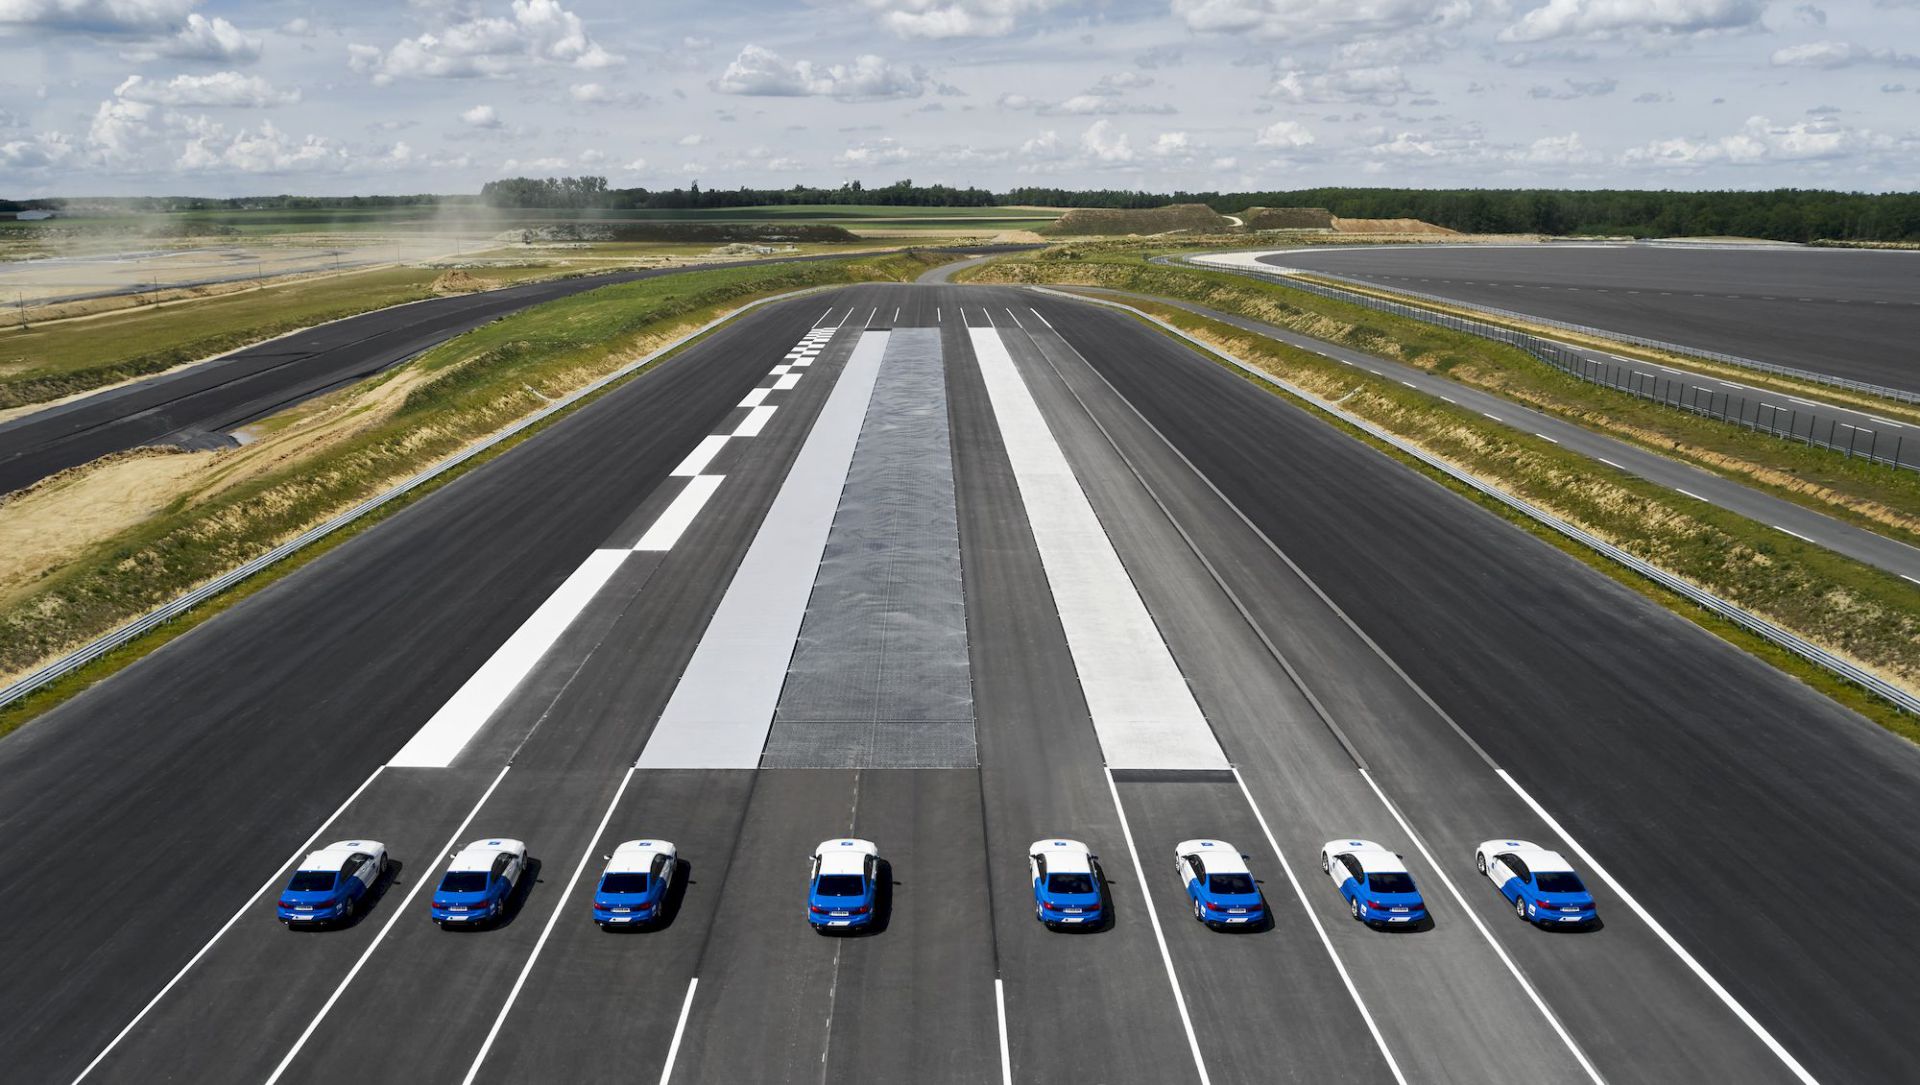 匈牙利ZalaZone試車場面積達265公頃 將成為歐盟智慧駕駛系統發展重點場域.jpeg